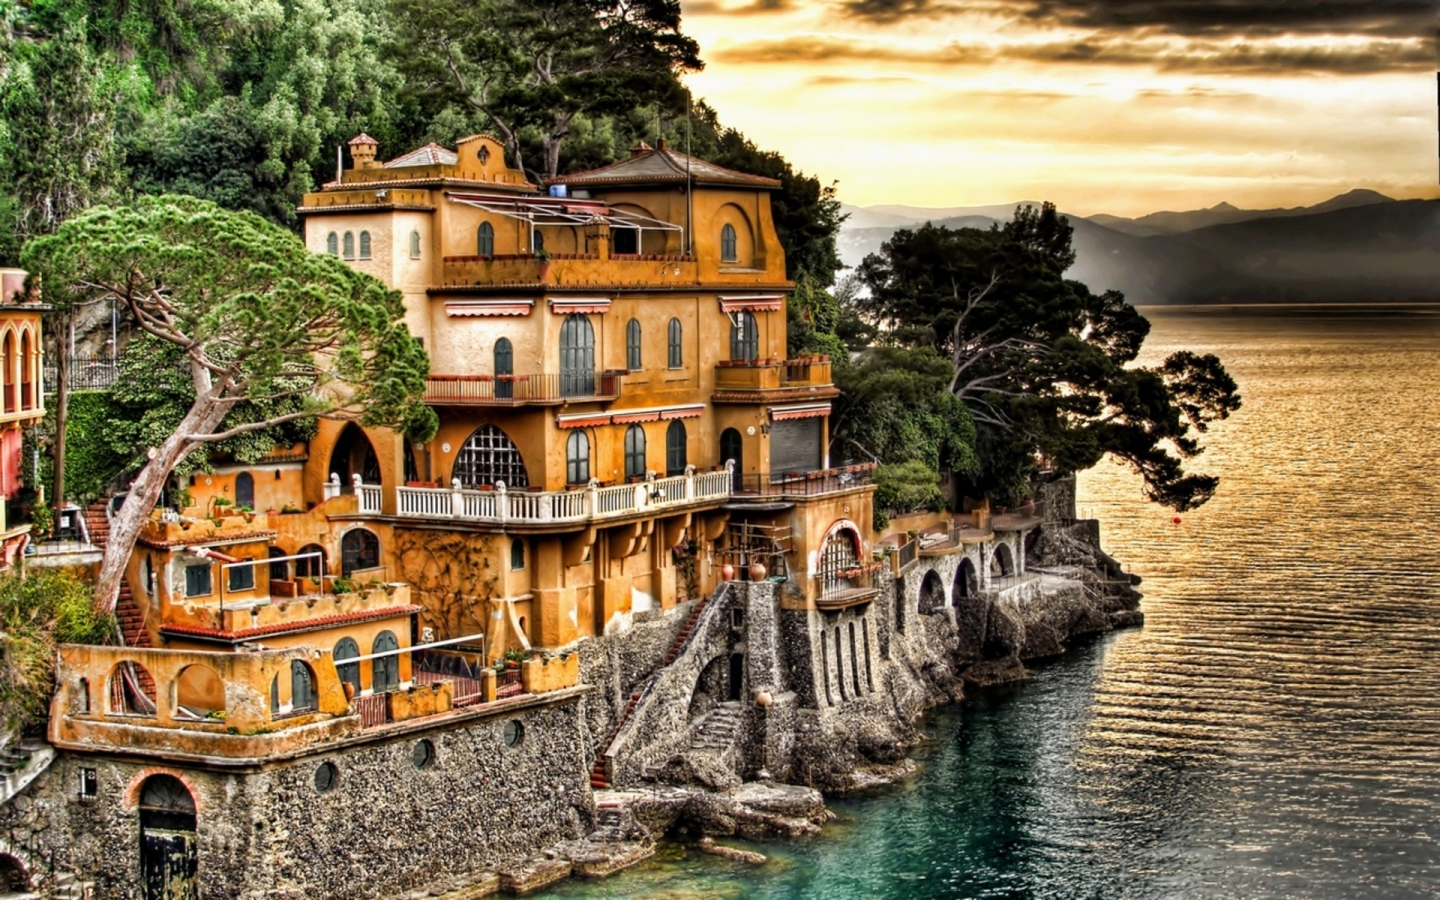 Portofino Coast Genoa for 1440 x 900 widescreen resolution